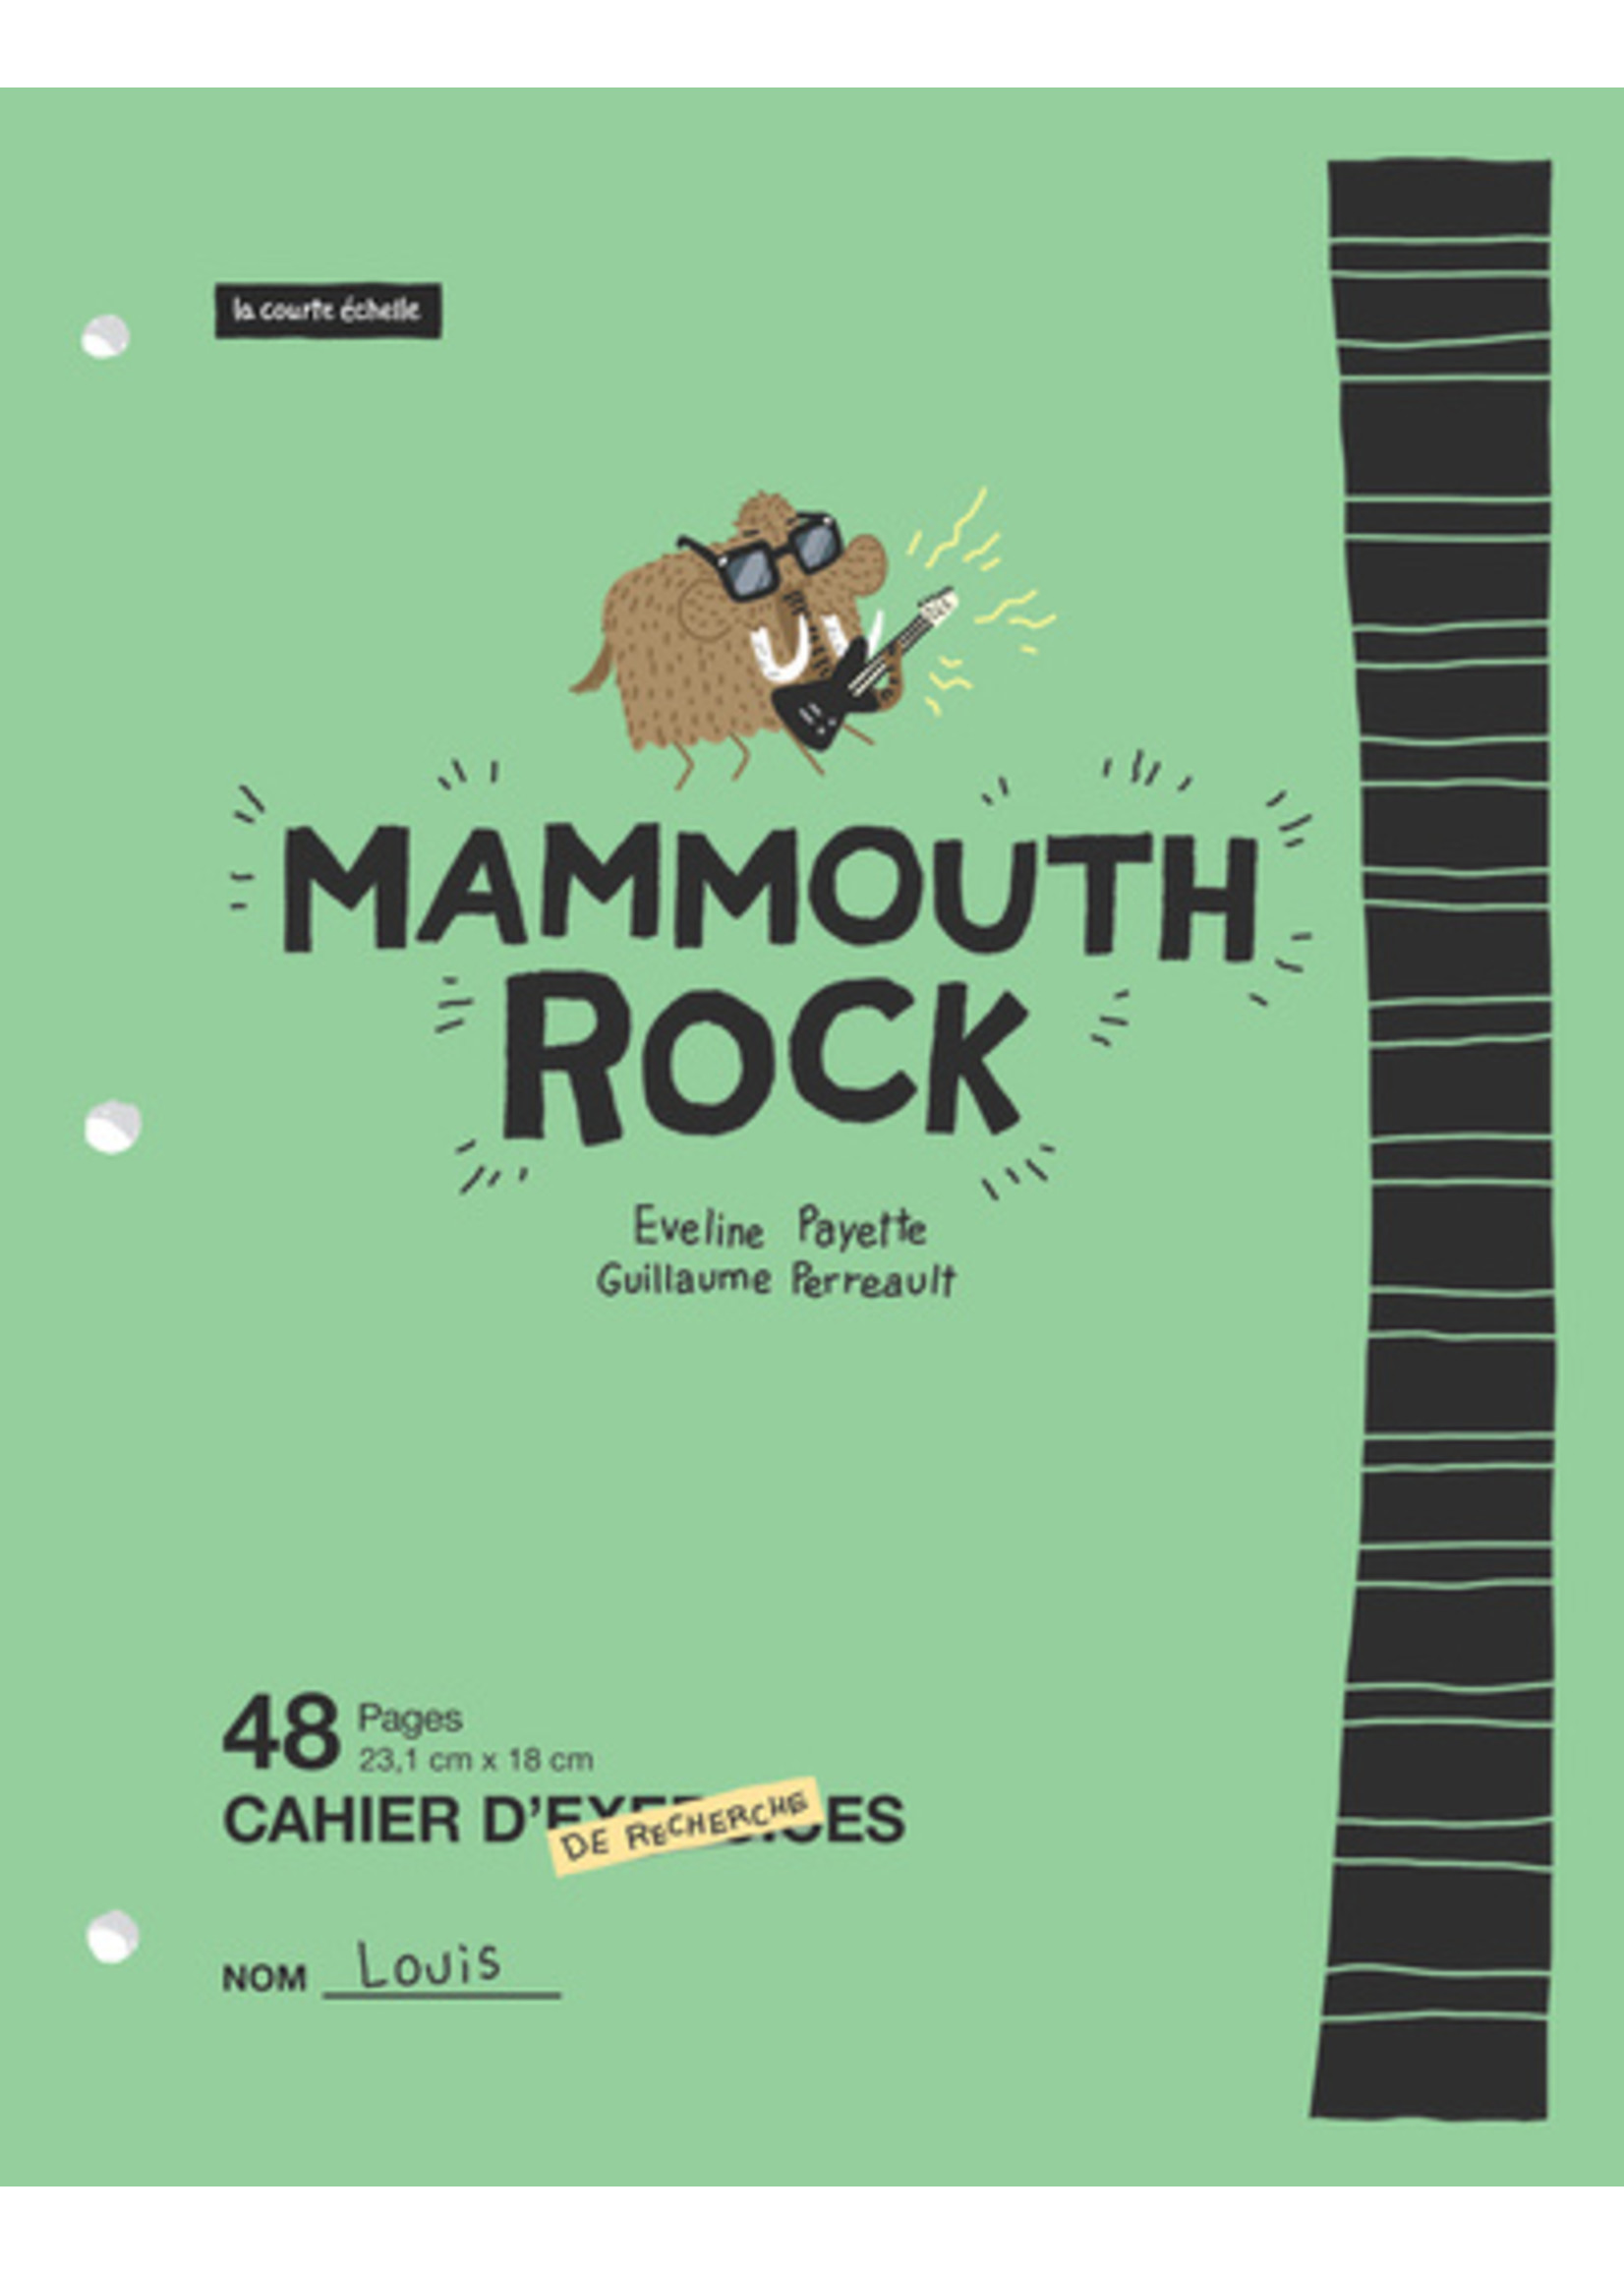 La courte échelle Mammouth rock